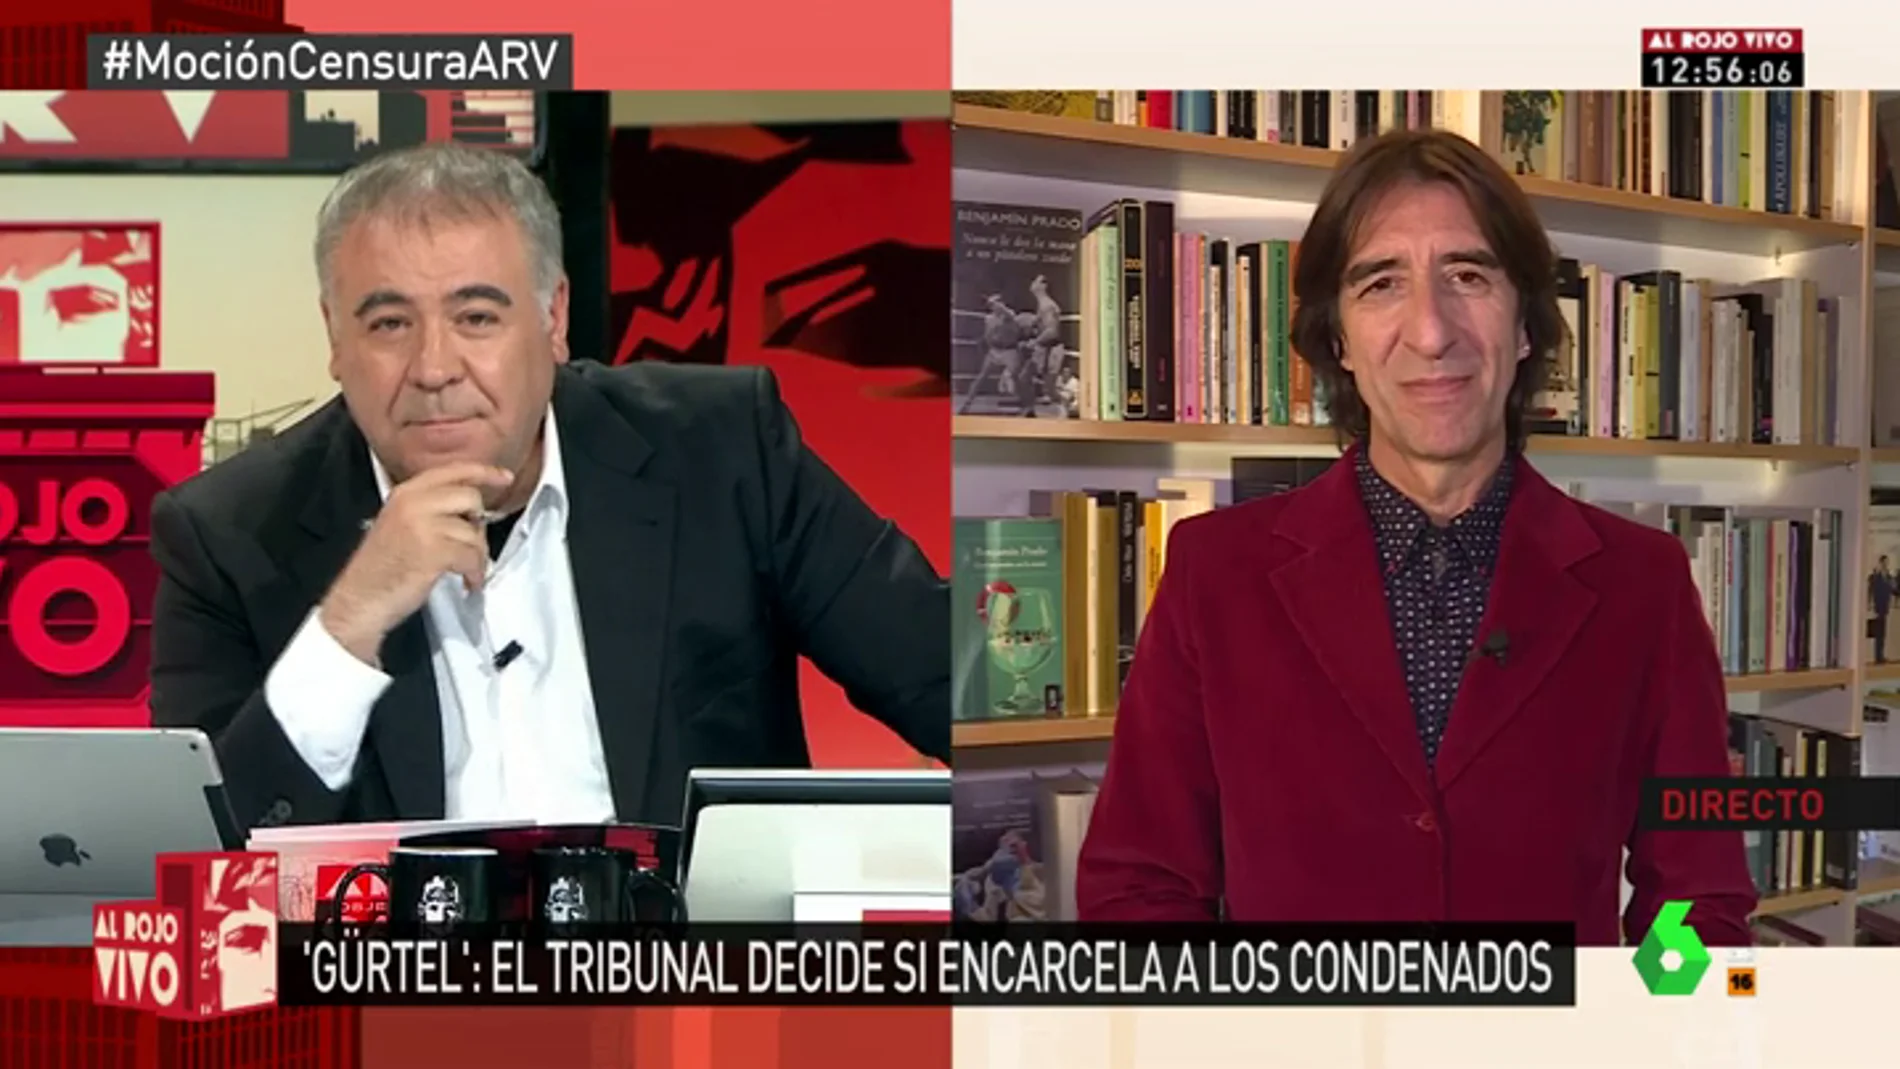 Benjamín Prado: "La democracia tiene límites: no puedes poner a los zorros a cuidar a las gallinas"